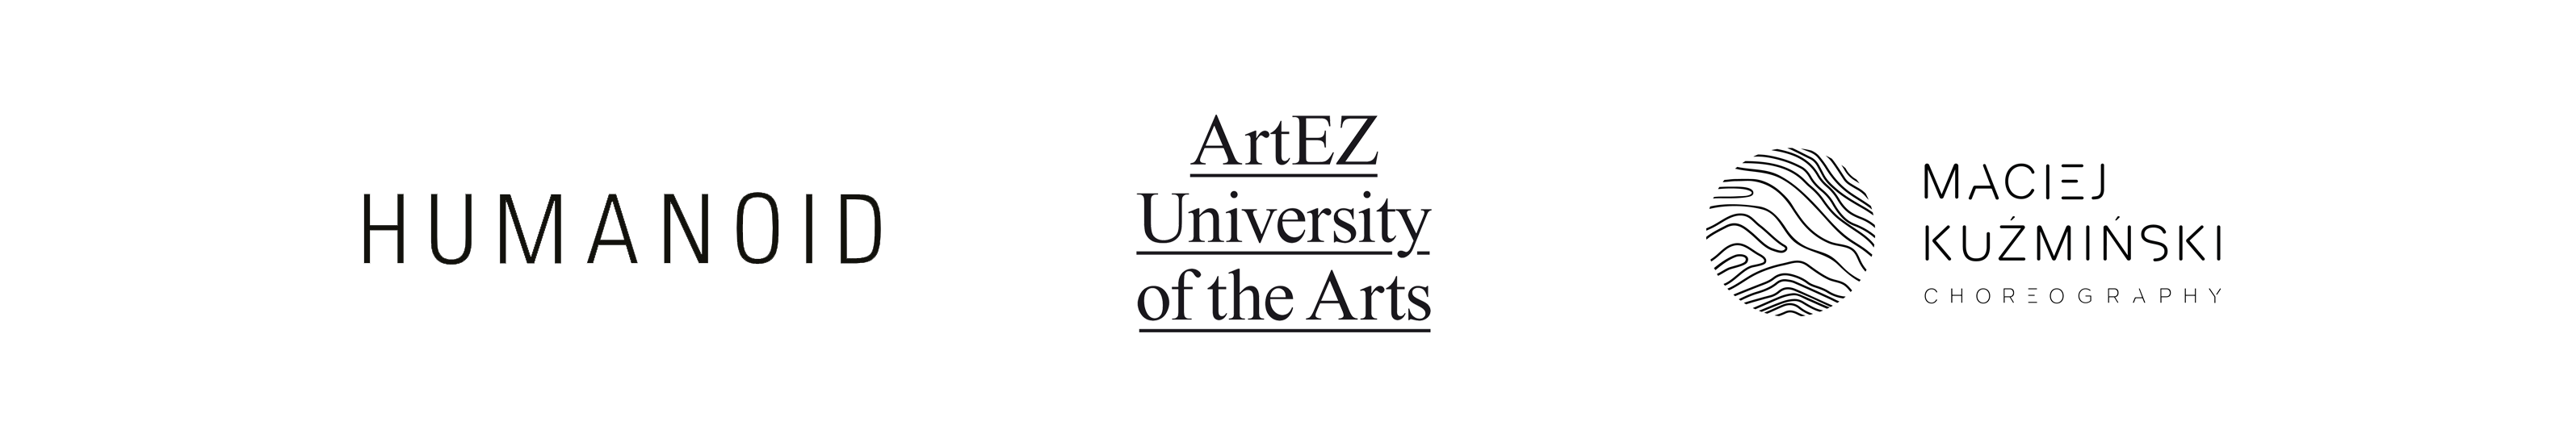 ArtEZ logos 2